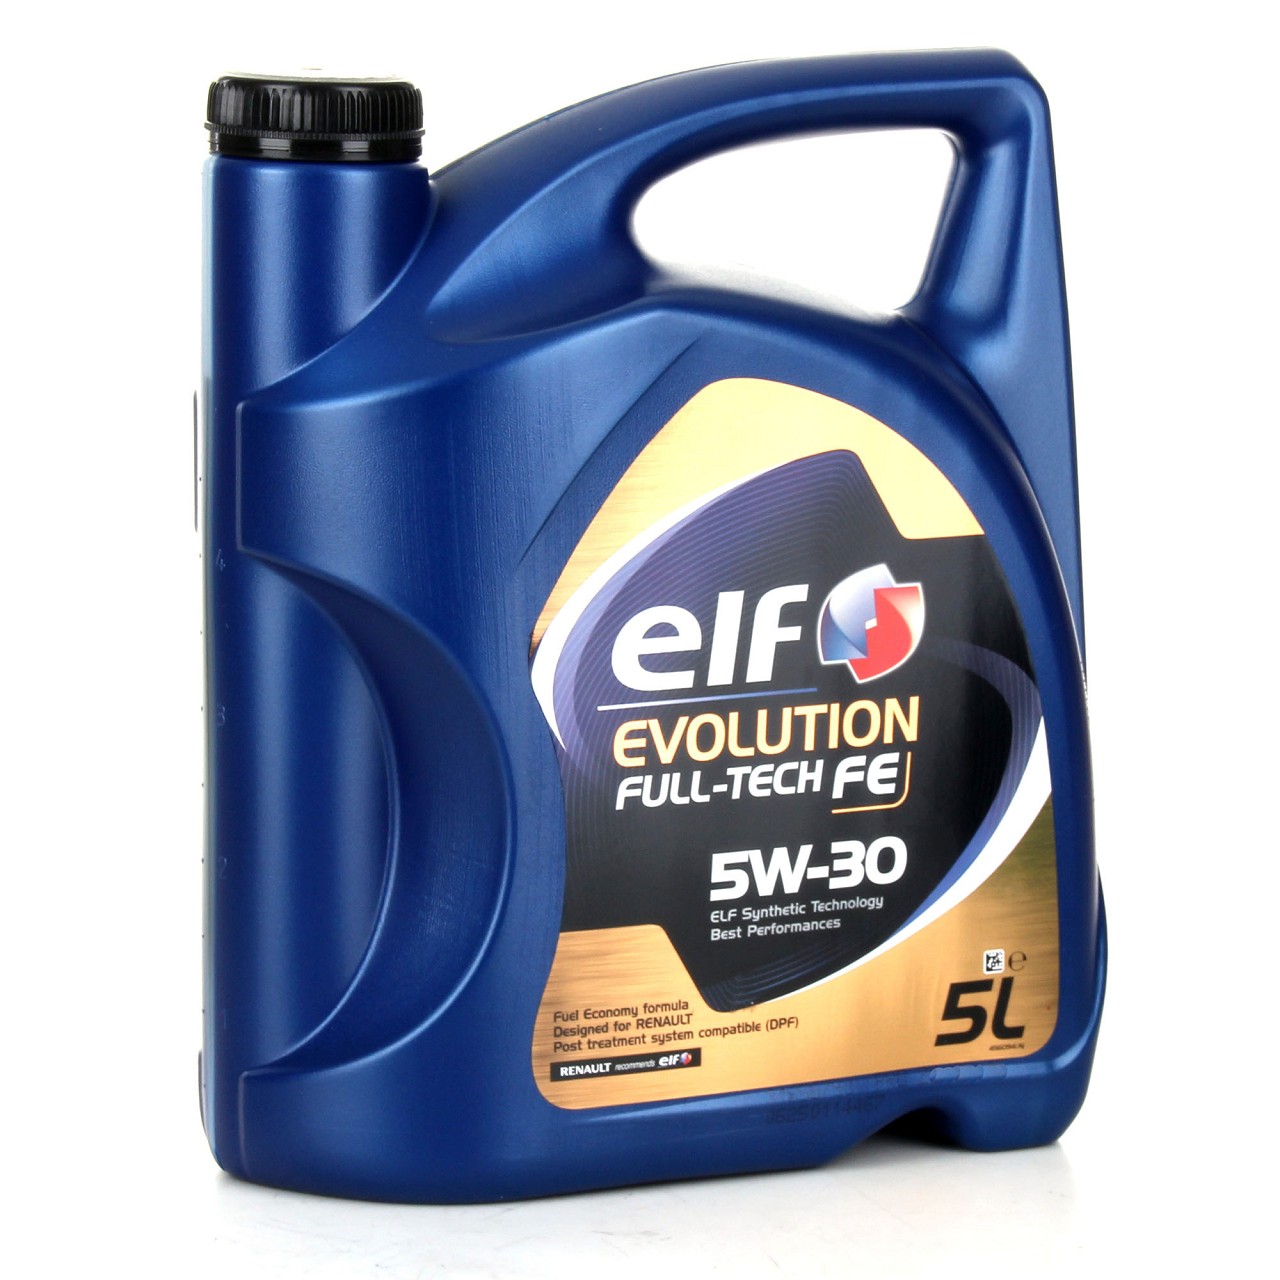 6L elf Evolution Full-Tech FE 5W-30 Motoröl ORIGINAL Renault Ölfilter 7701479124